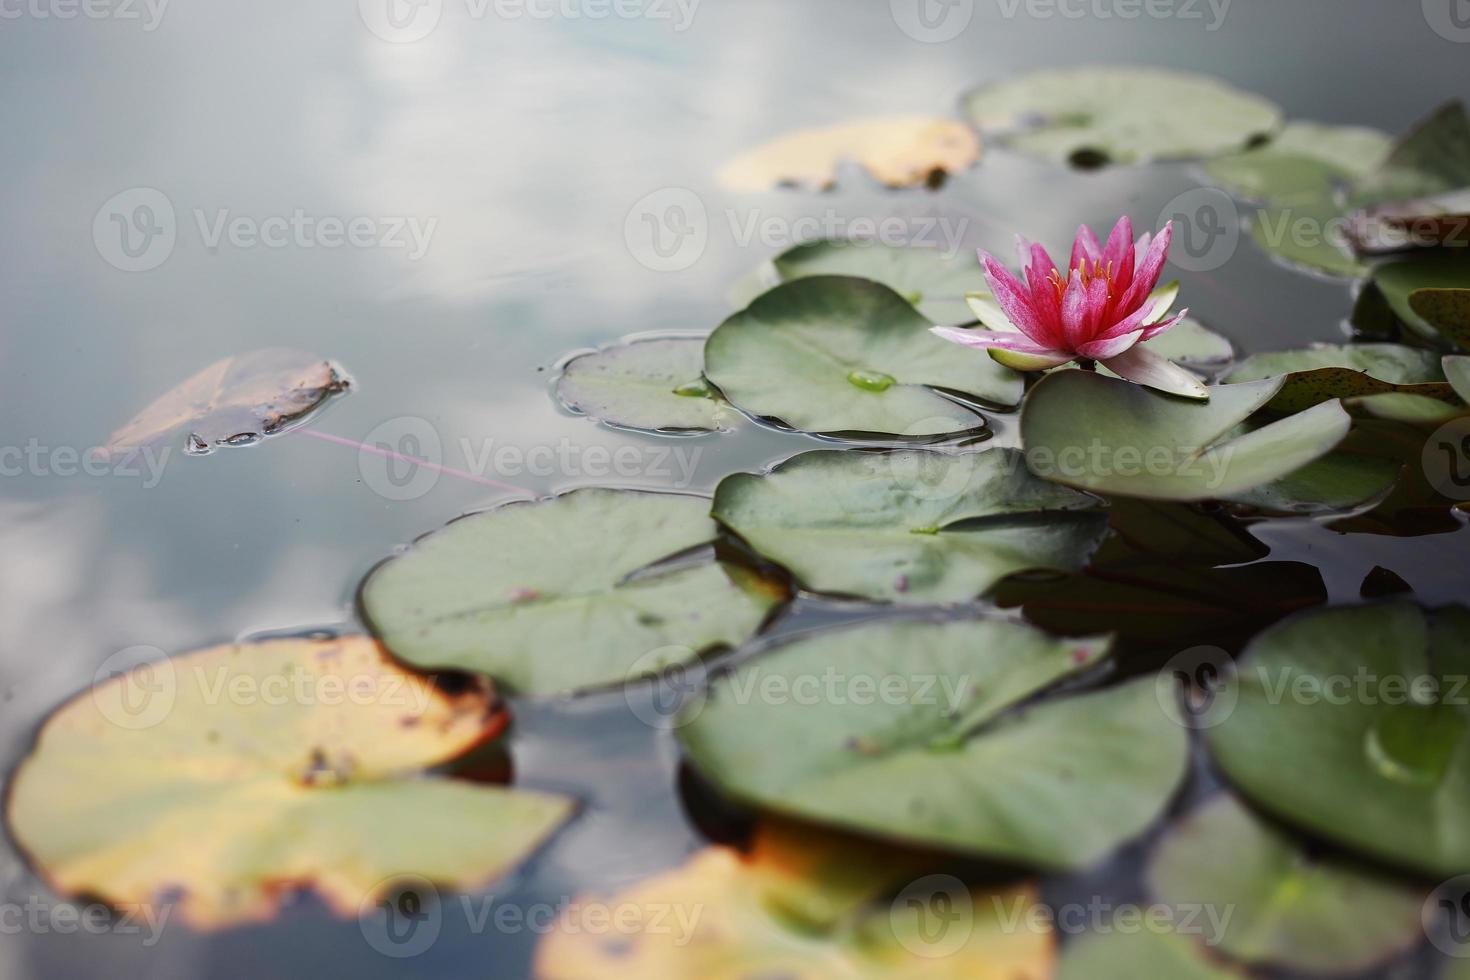 rosa näckros med gröna näckrosor eller lotusblomma perry's i trädgårdsdamm. närbild av nymphaea reflekteras på grönt vatten mot solen. blomma landskap med kopia utrymme. selektiv fokusering foto